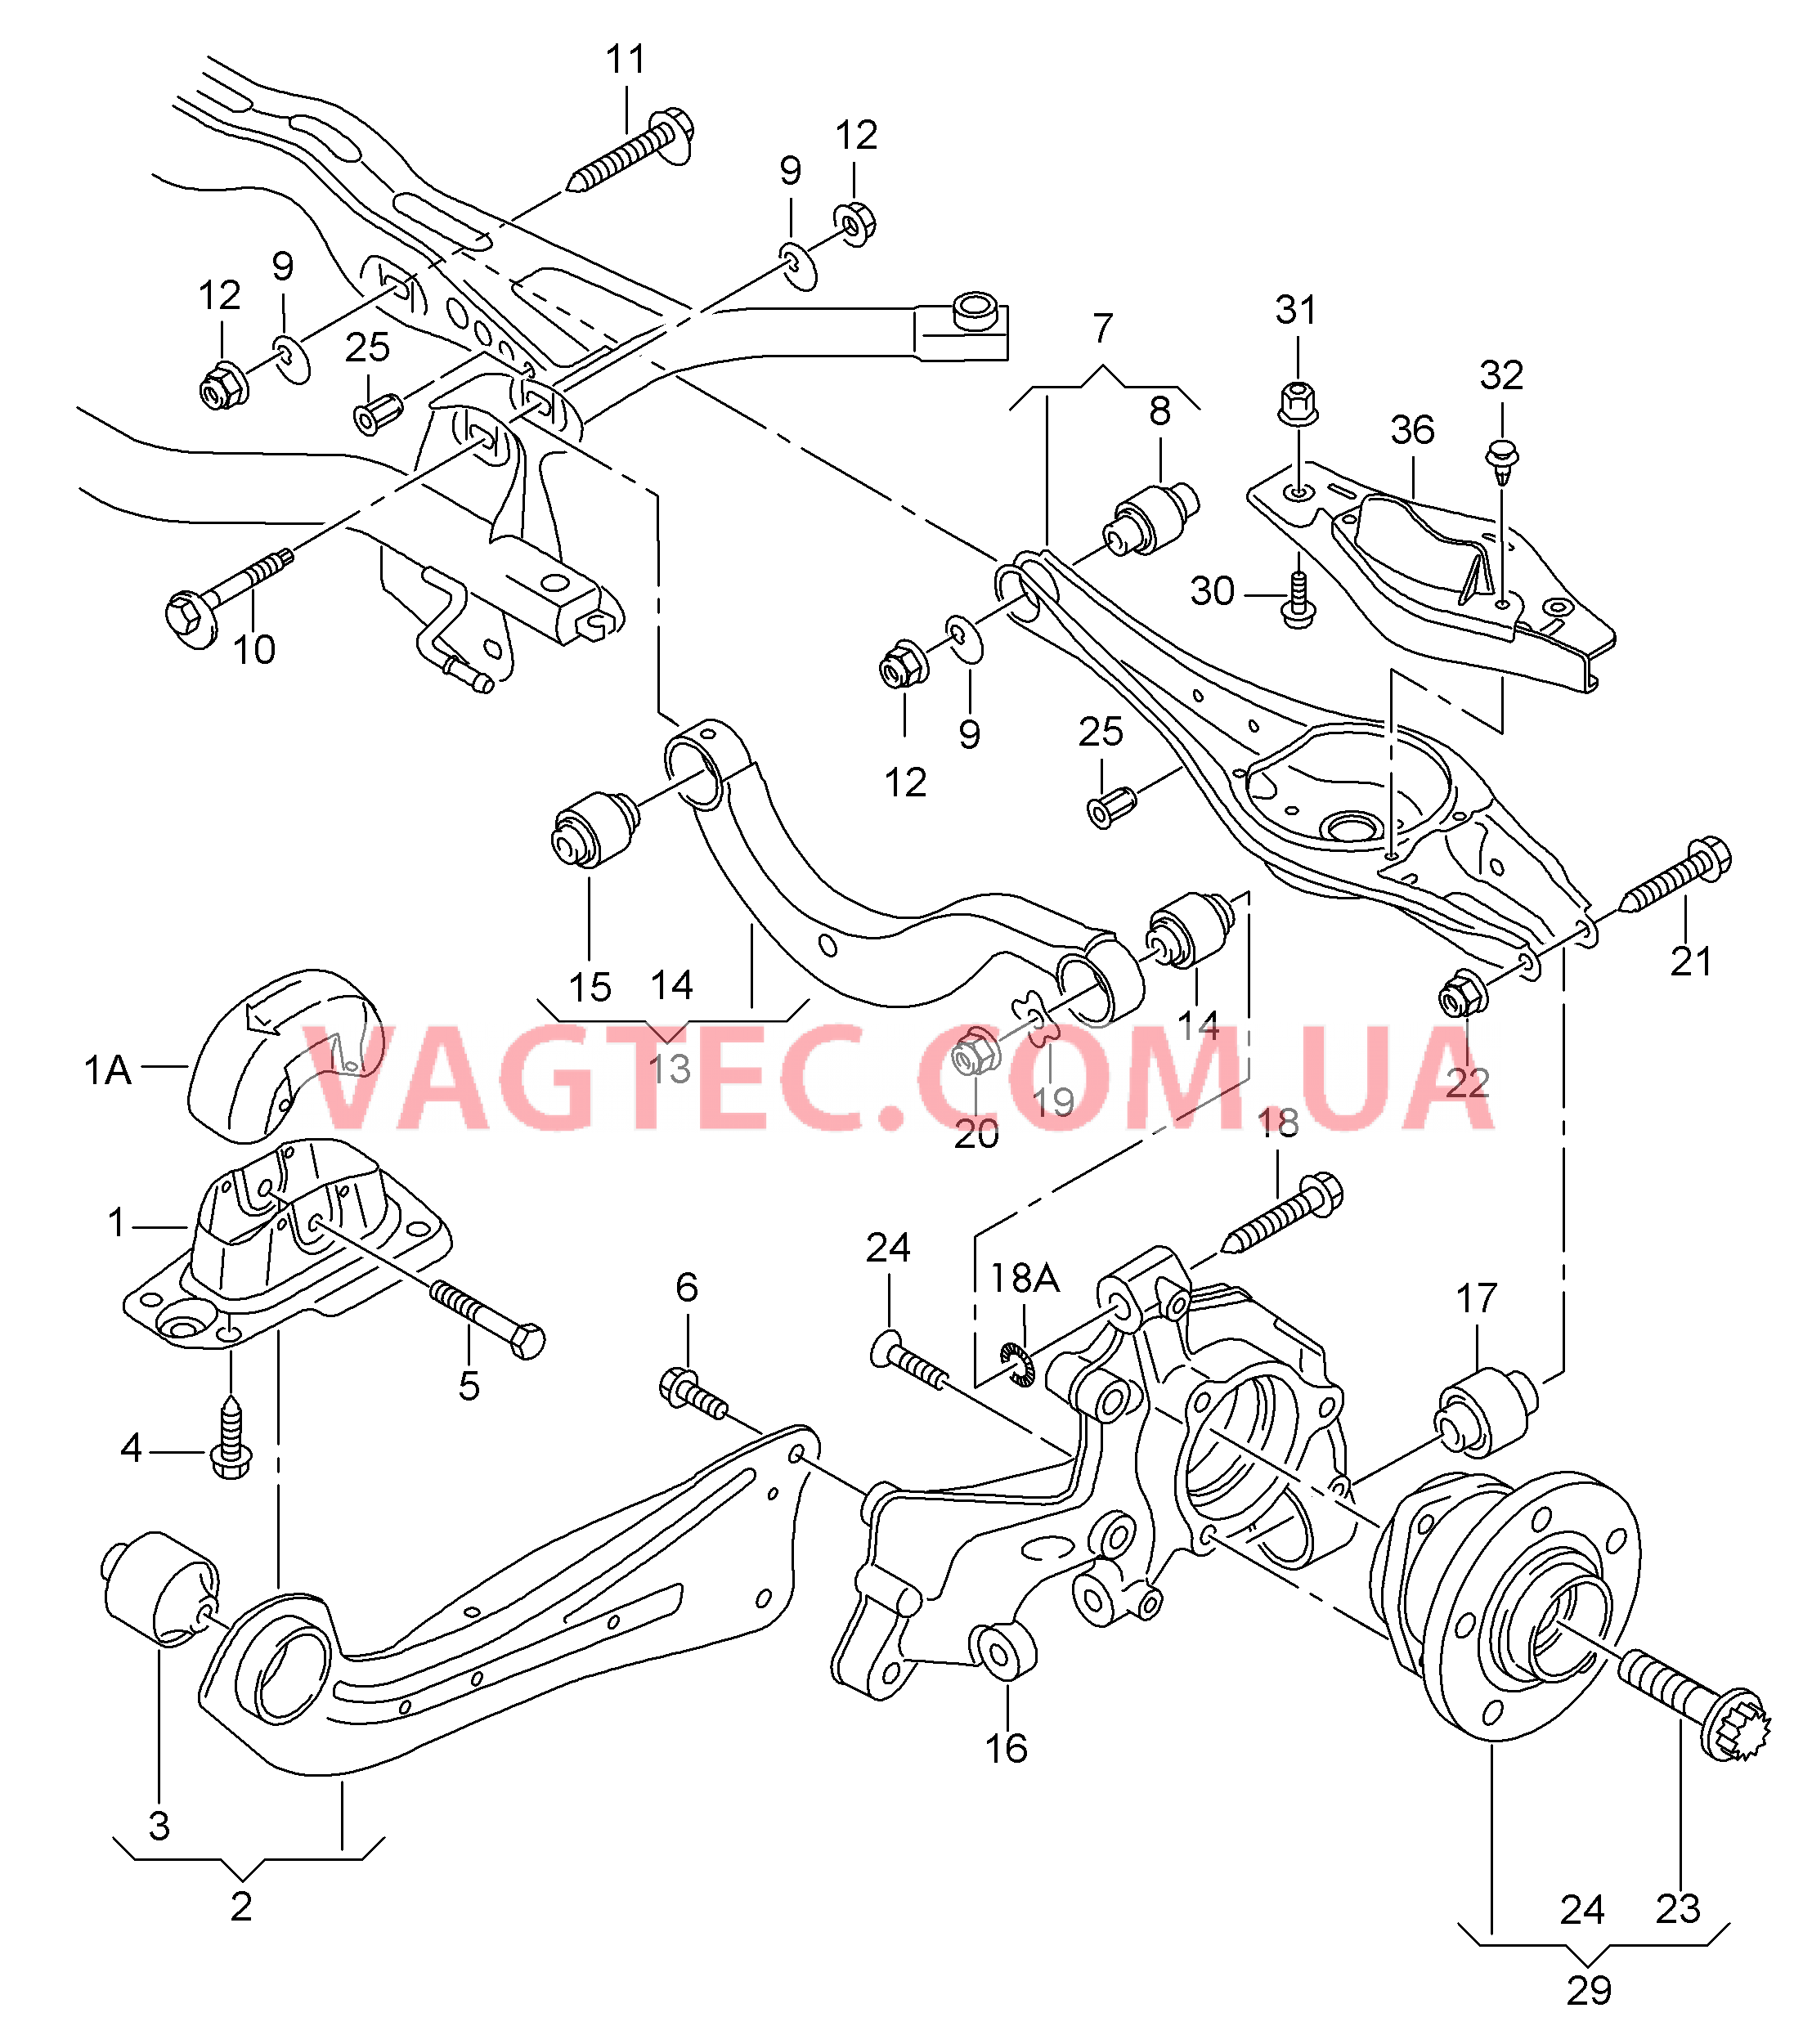 Pычаг подвески, поперечный Pычаг подвески Поворотный кулак  для AUDI A3 2018